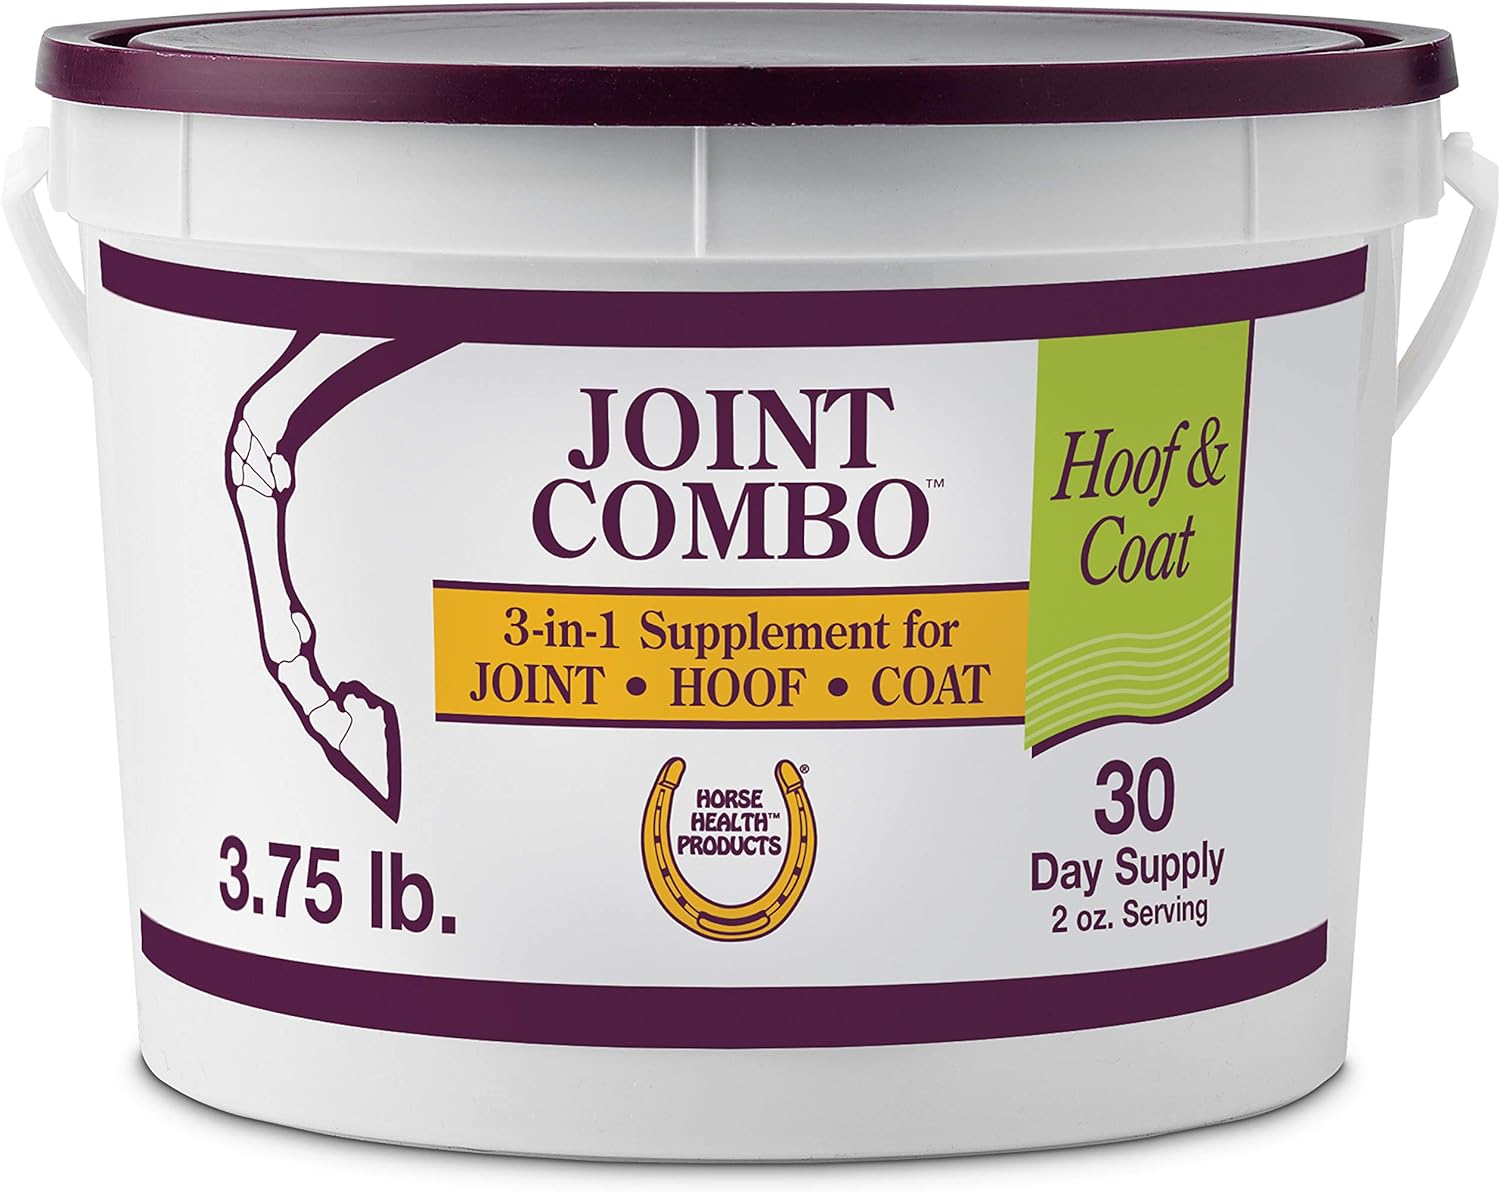 Horse Health Joint Combo Hoof & Coat, Convenient 3-